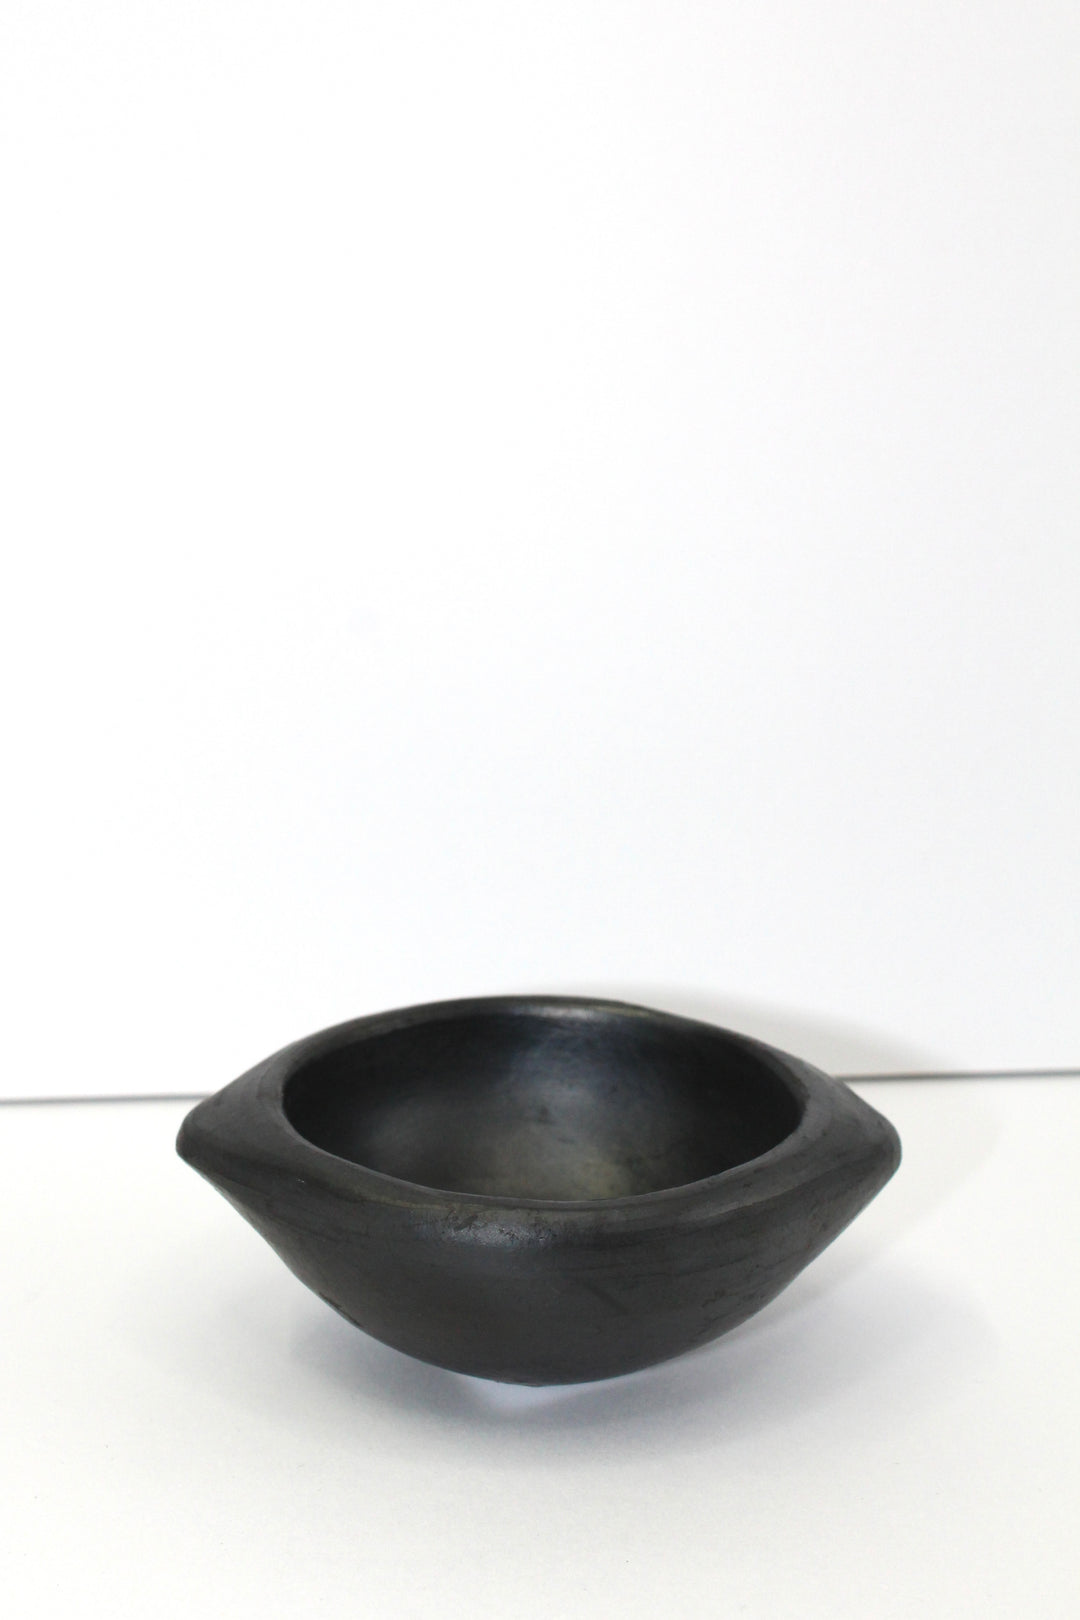 Miniature Bowl - La Chamba